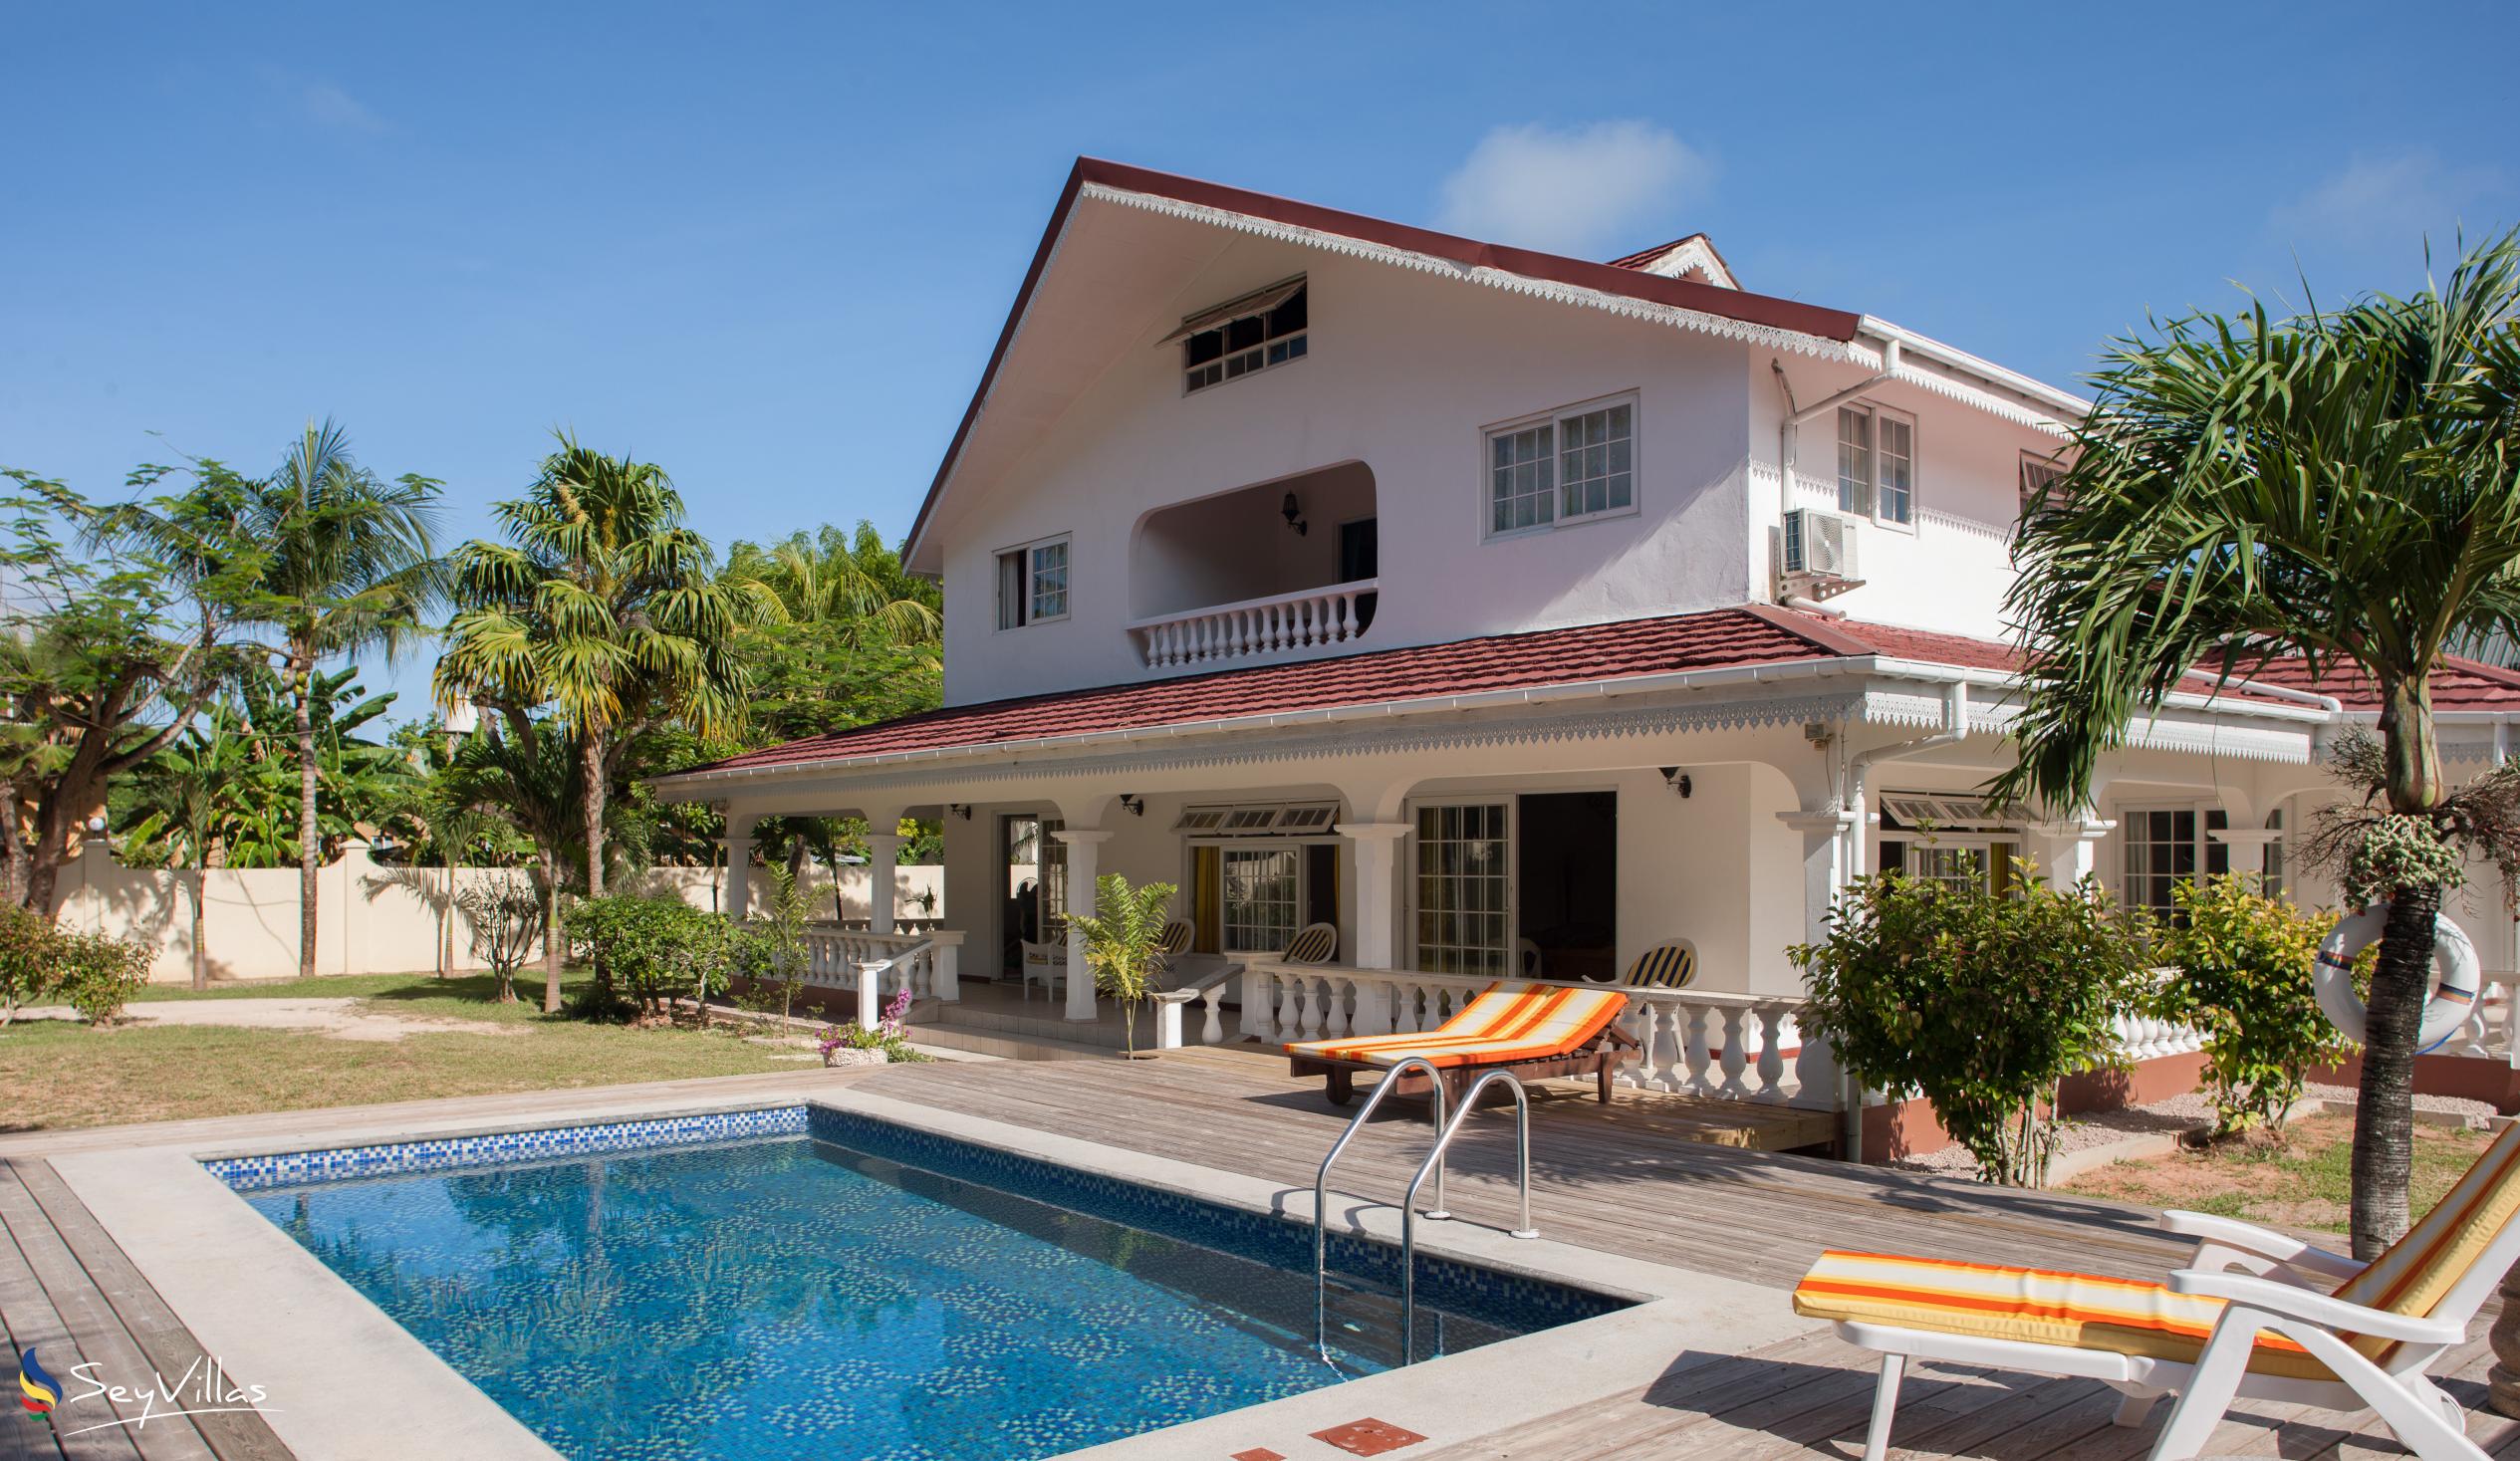 Foto 1: Villa Confort - Esterno - Praslin (Seychelles)